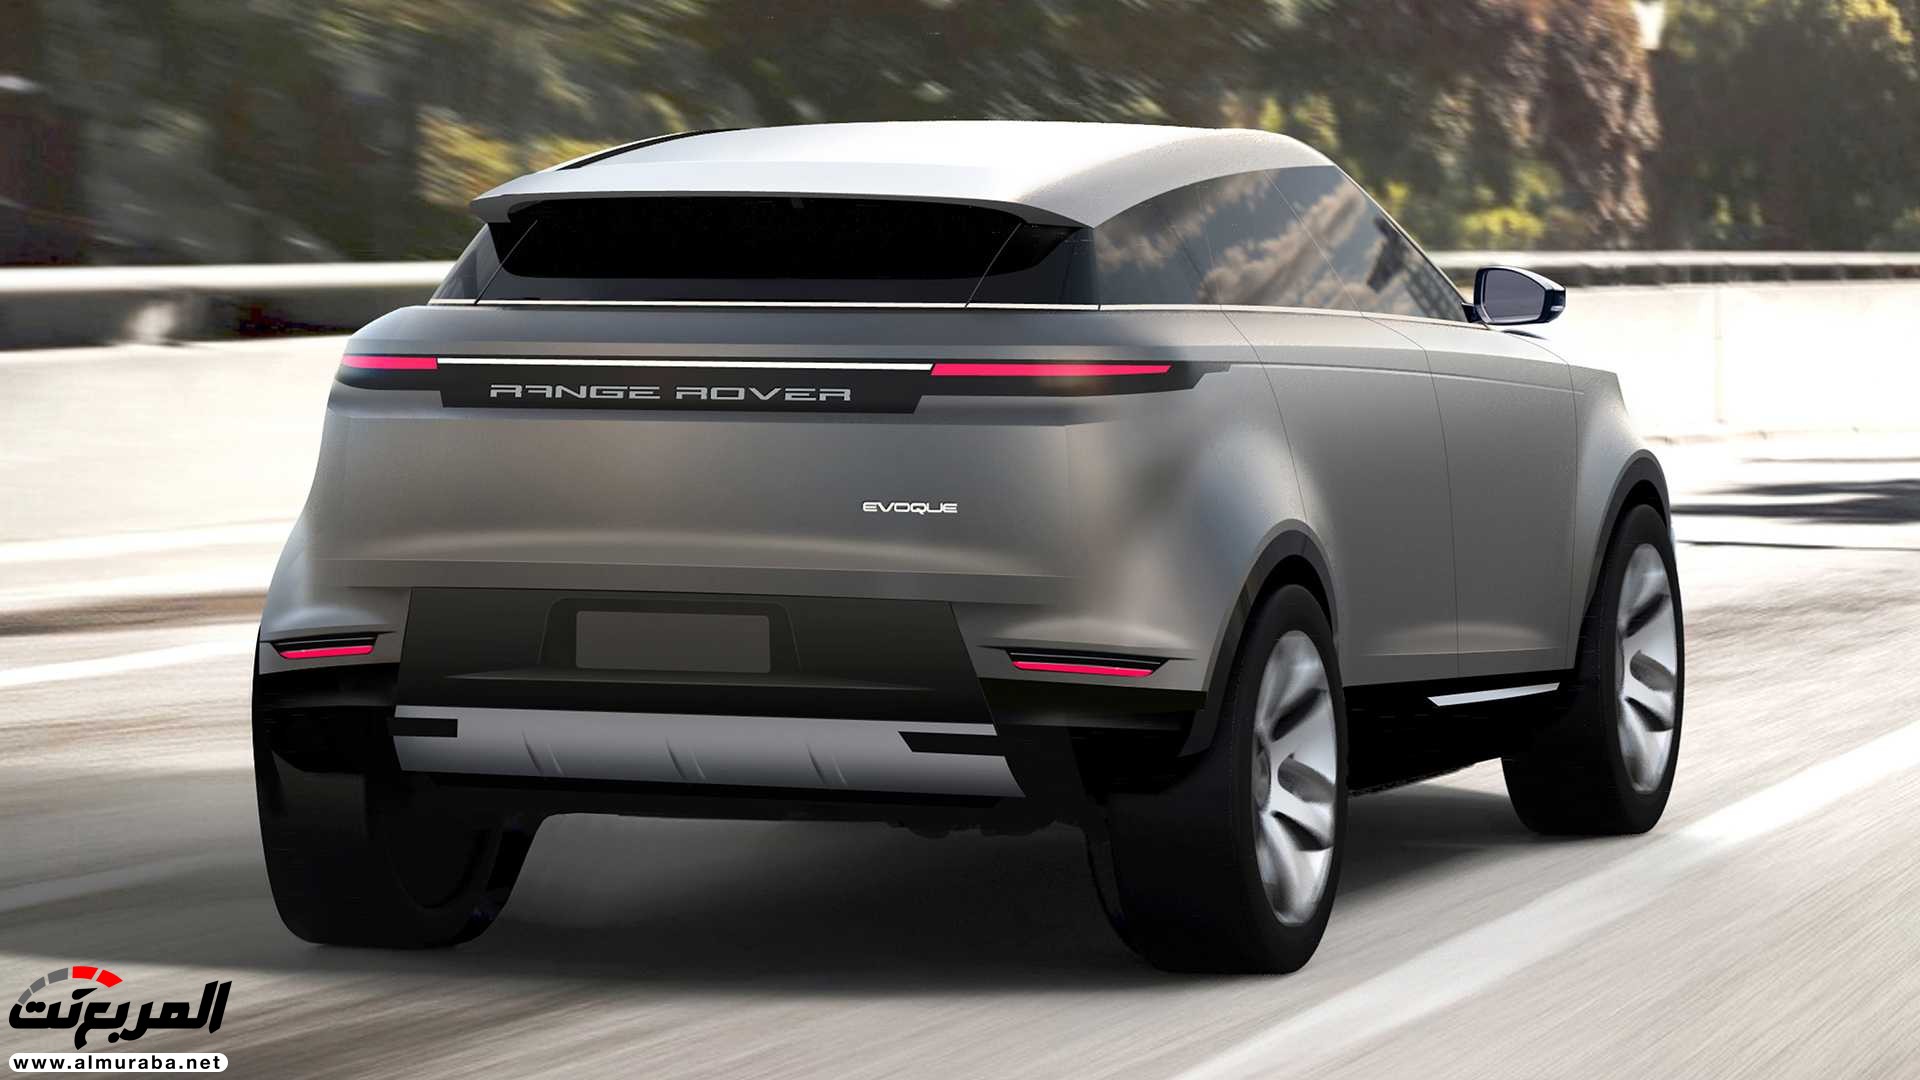 اهم 7 معلومات عن رنج روفر ايفوك 2020 الجديدة كلياً Range Rover Evoque 91